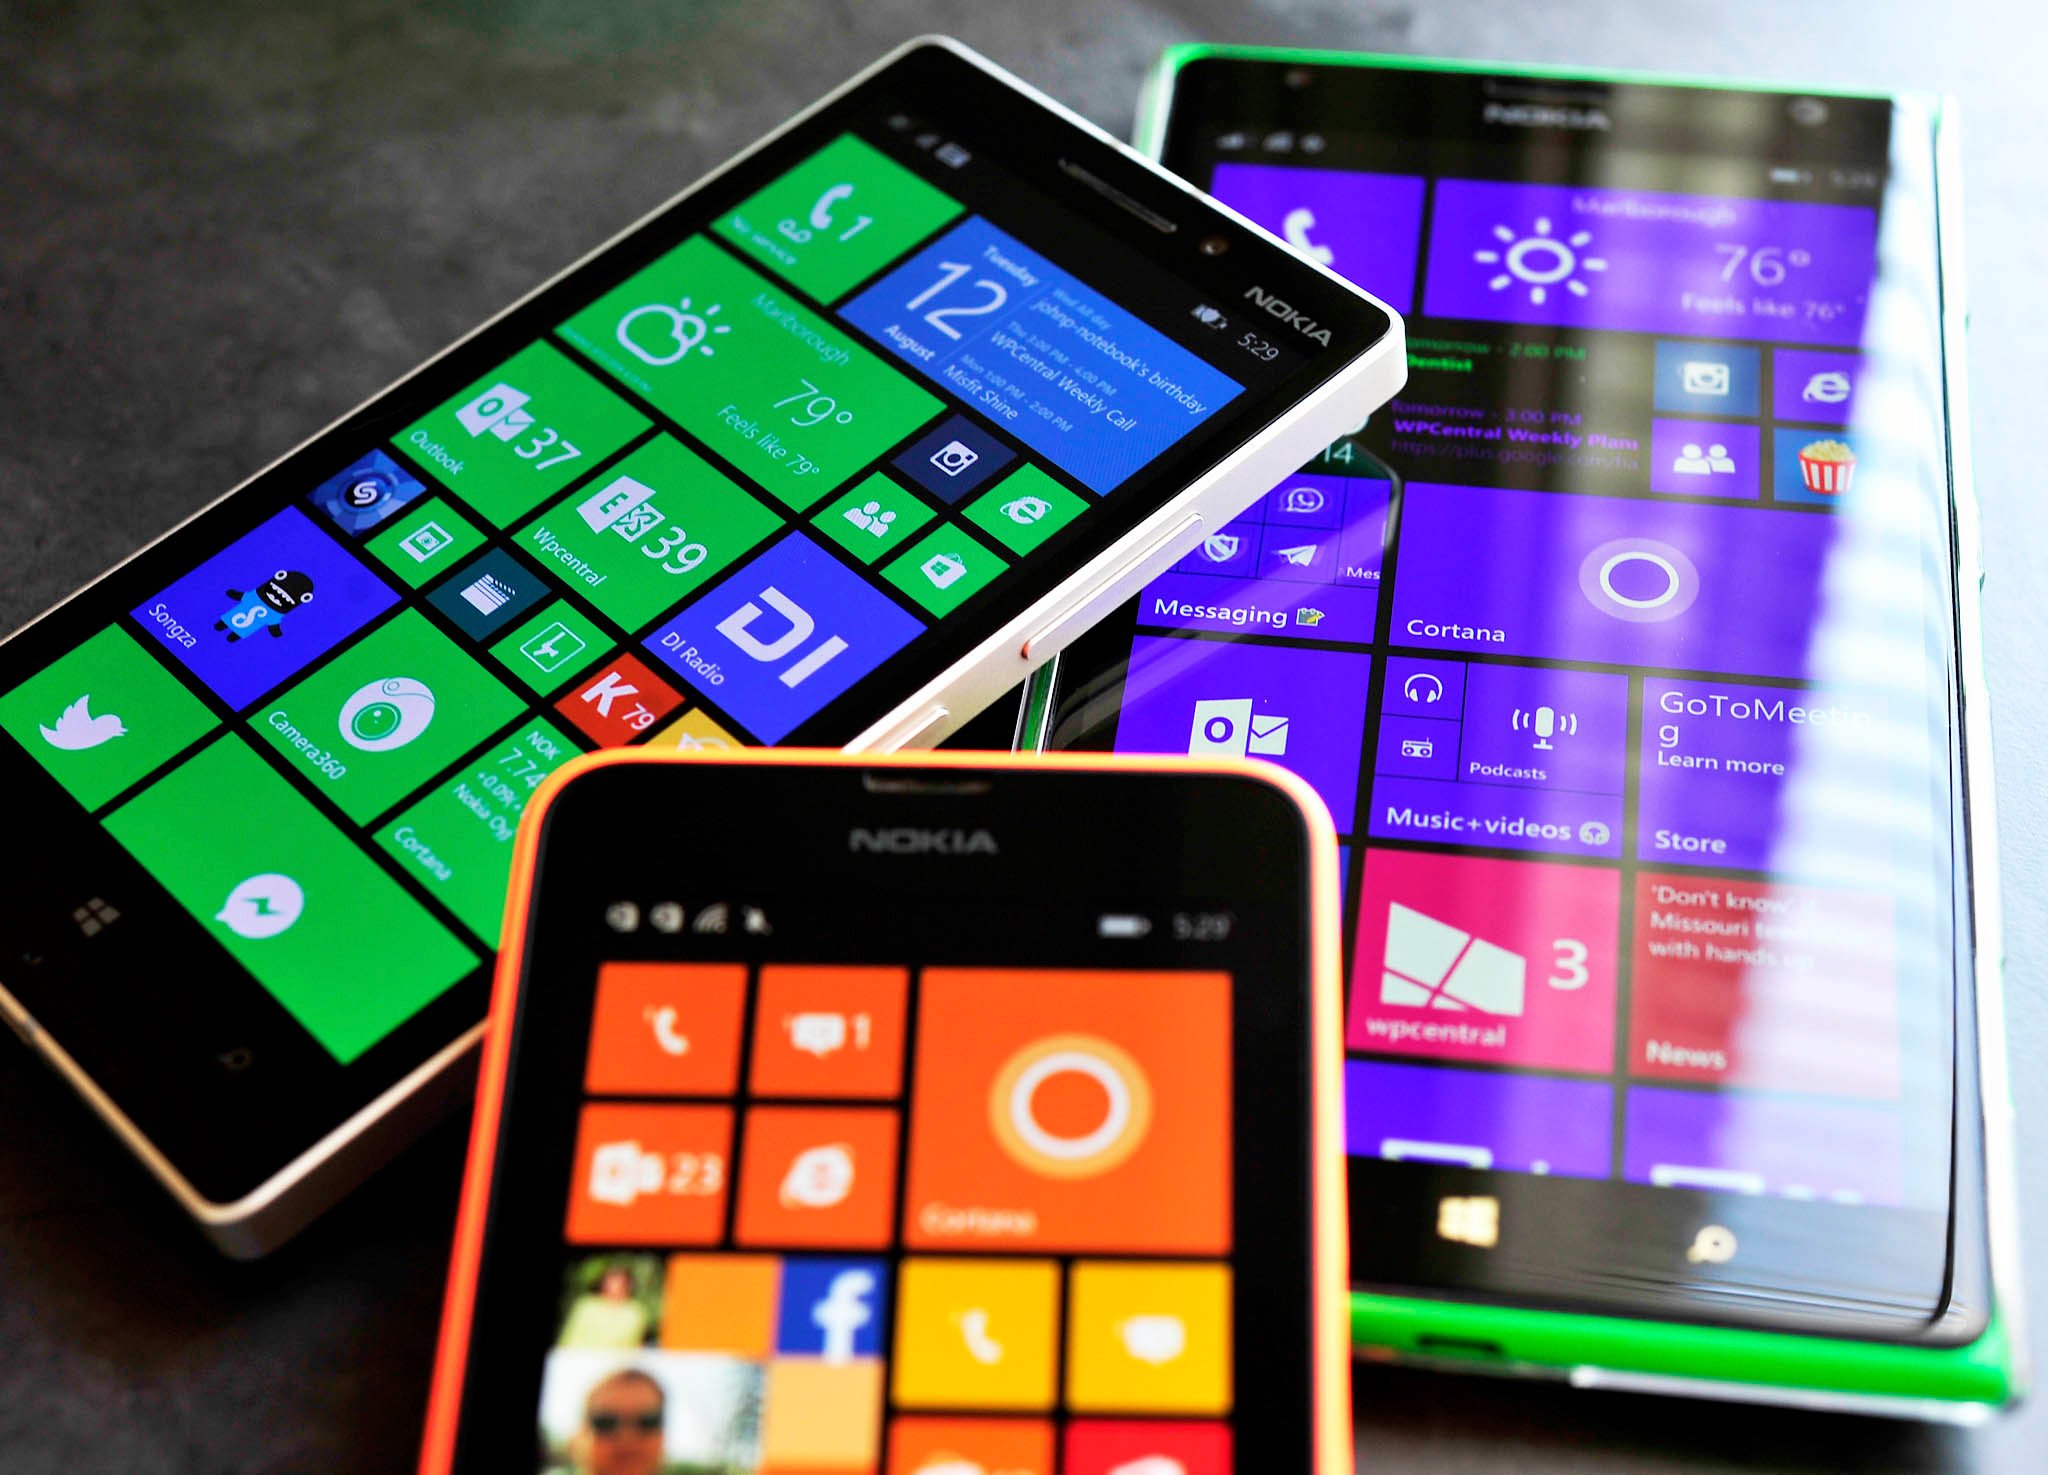 Best_Windows_Phones_August_2014.jpg